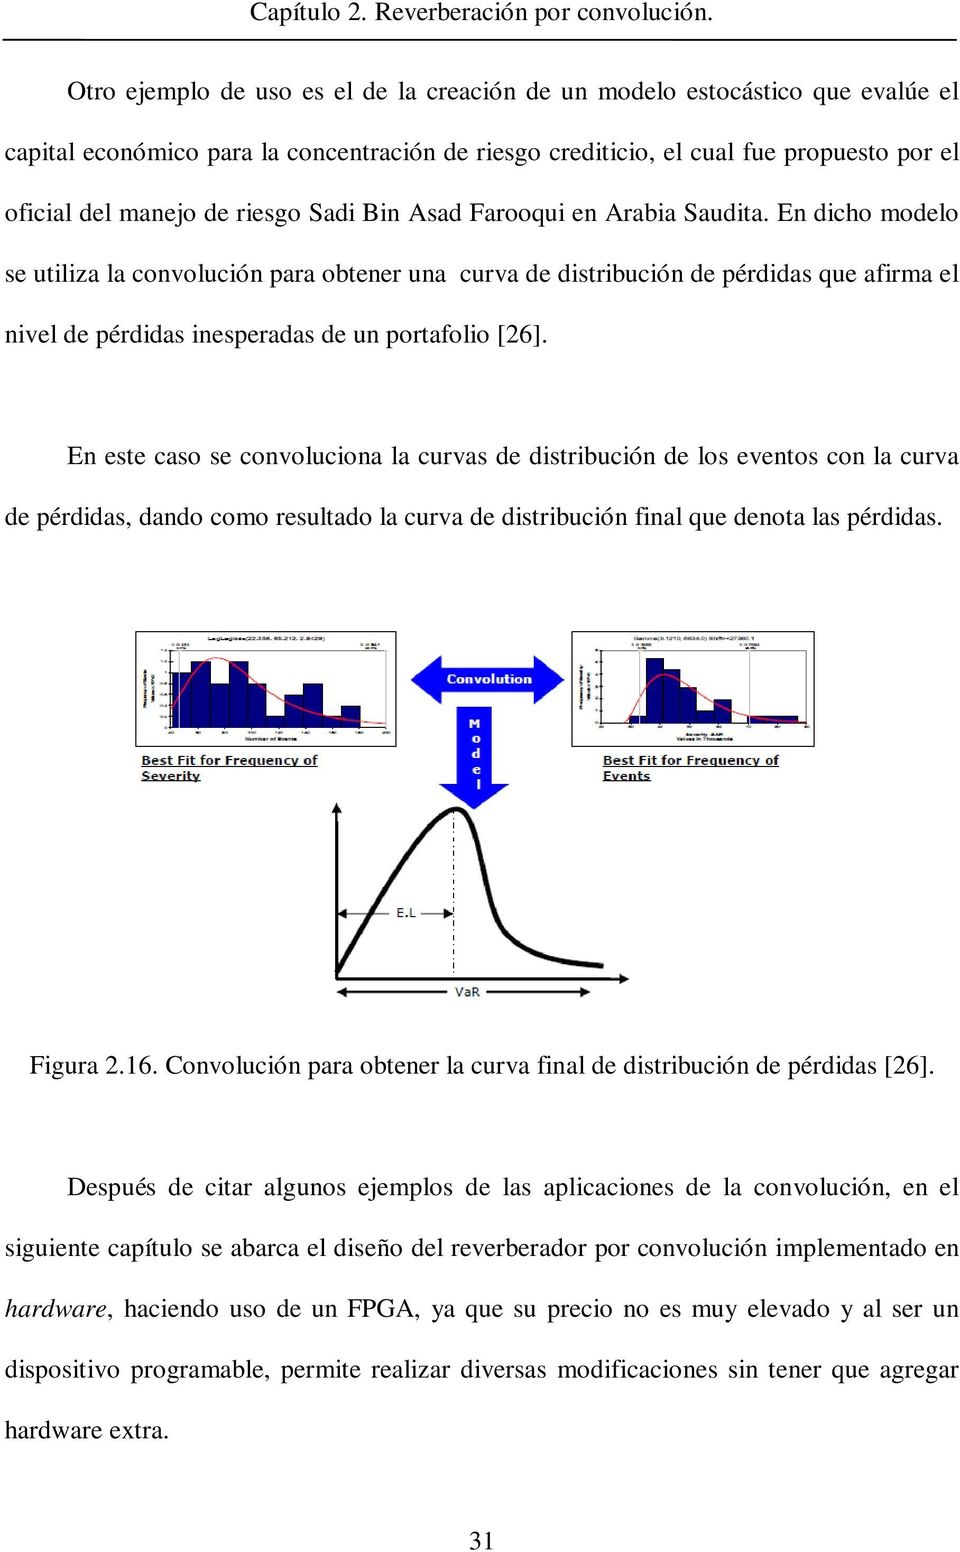 En dicho modelo se utiliza la convolución para obtener una curva de distribución de pérdidas que afirma el nivel de pérdidas inesperadas de un portafolio [26].